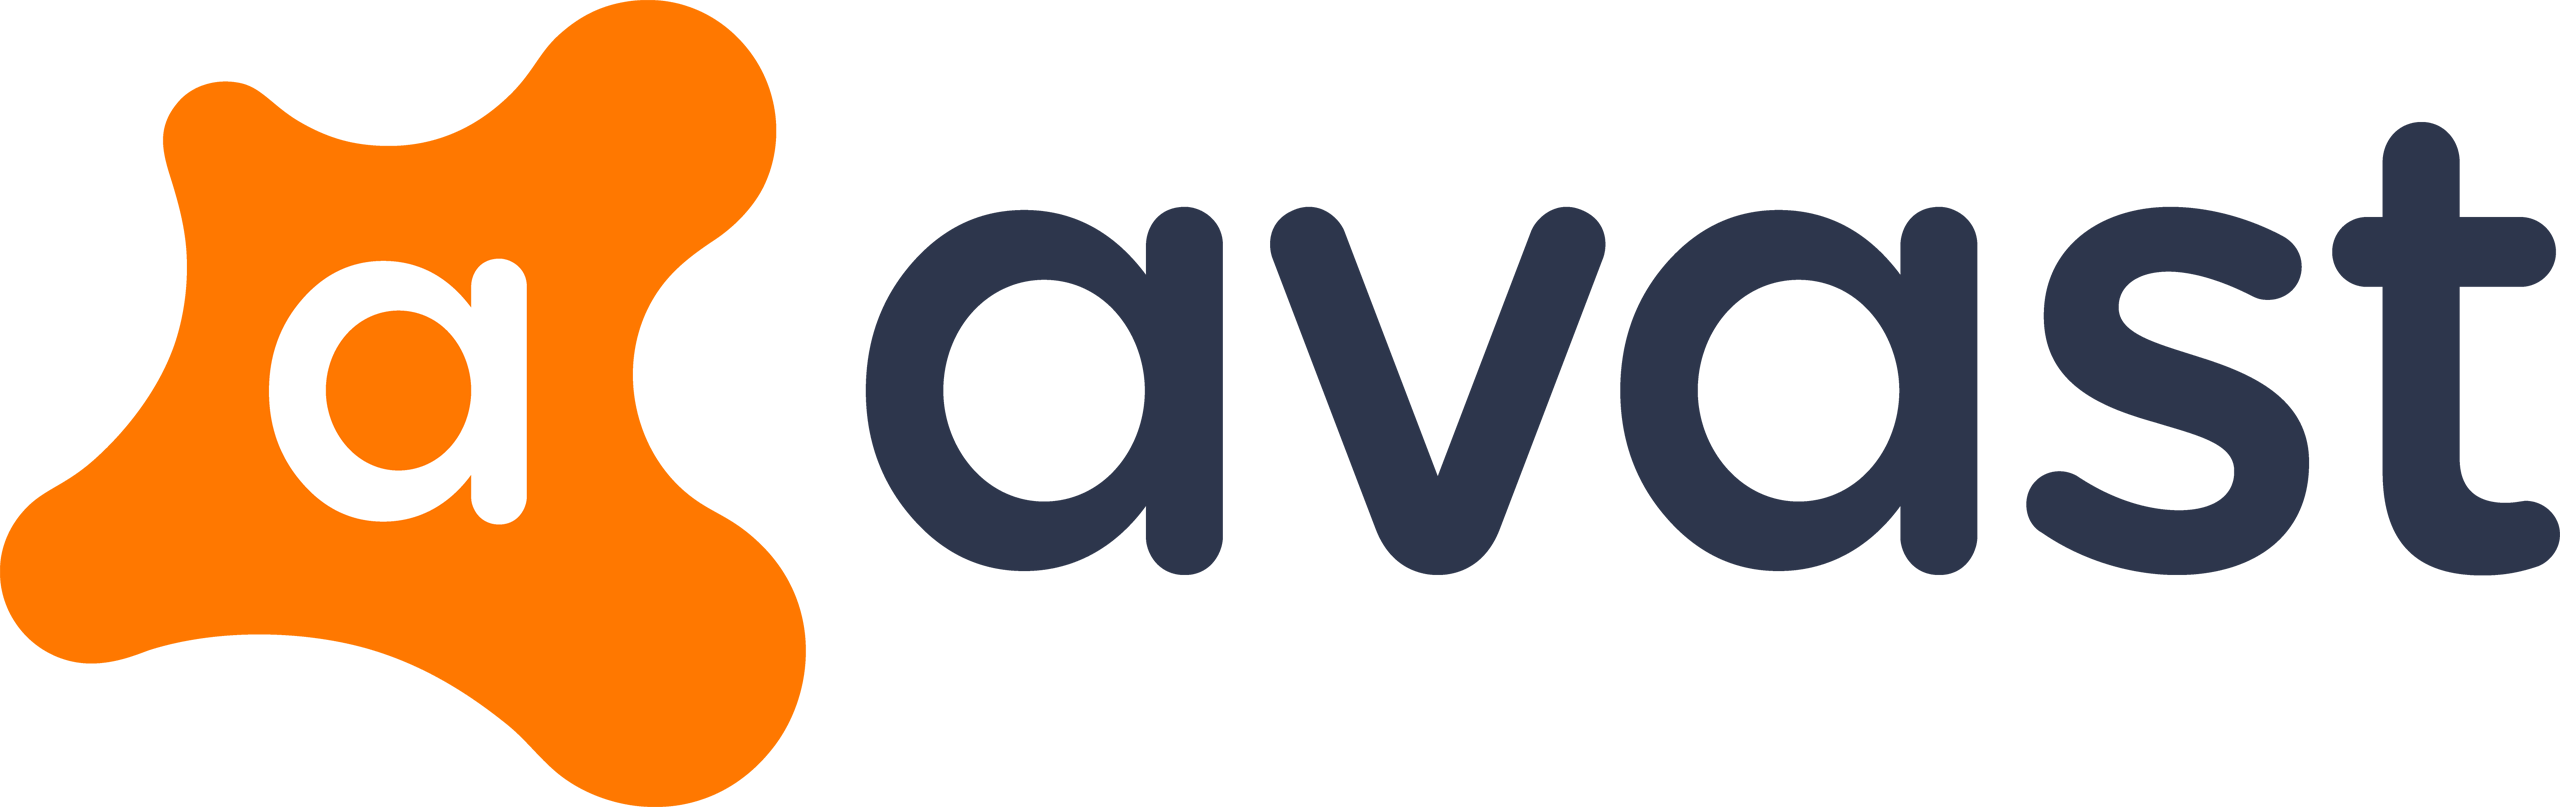 Avast Logo Wallpaper